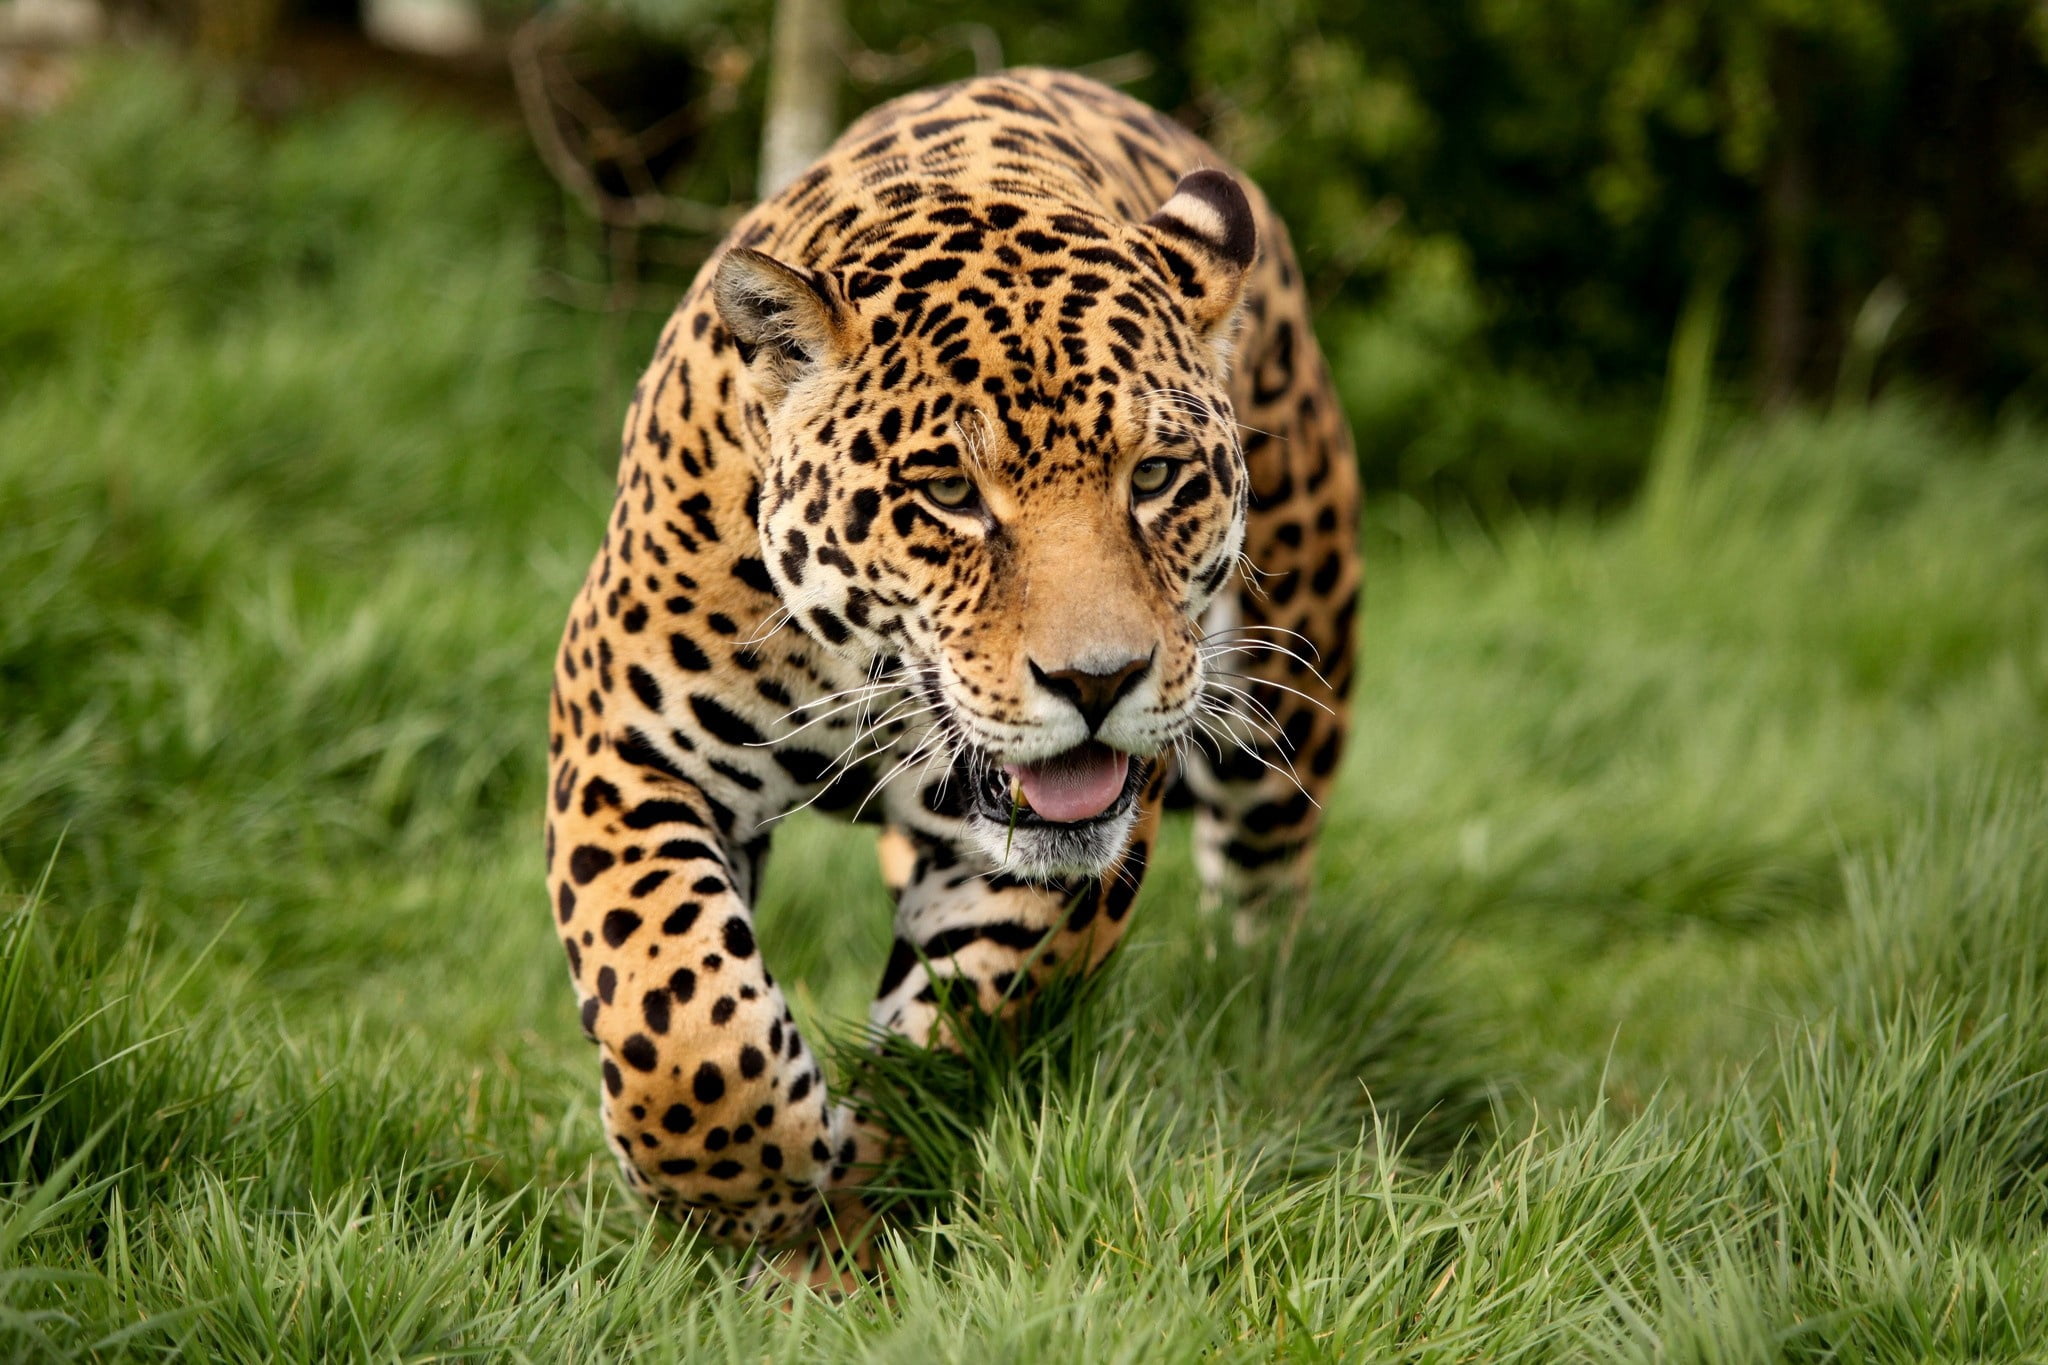 leopard on green grass